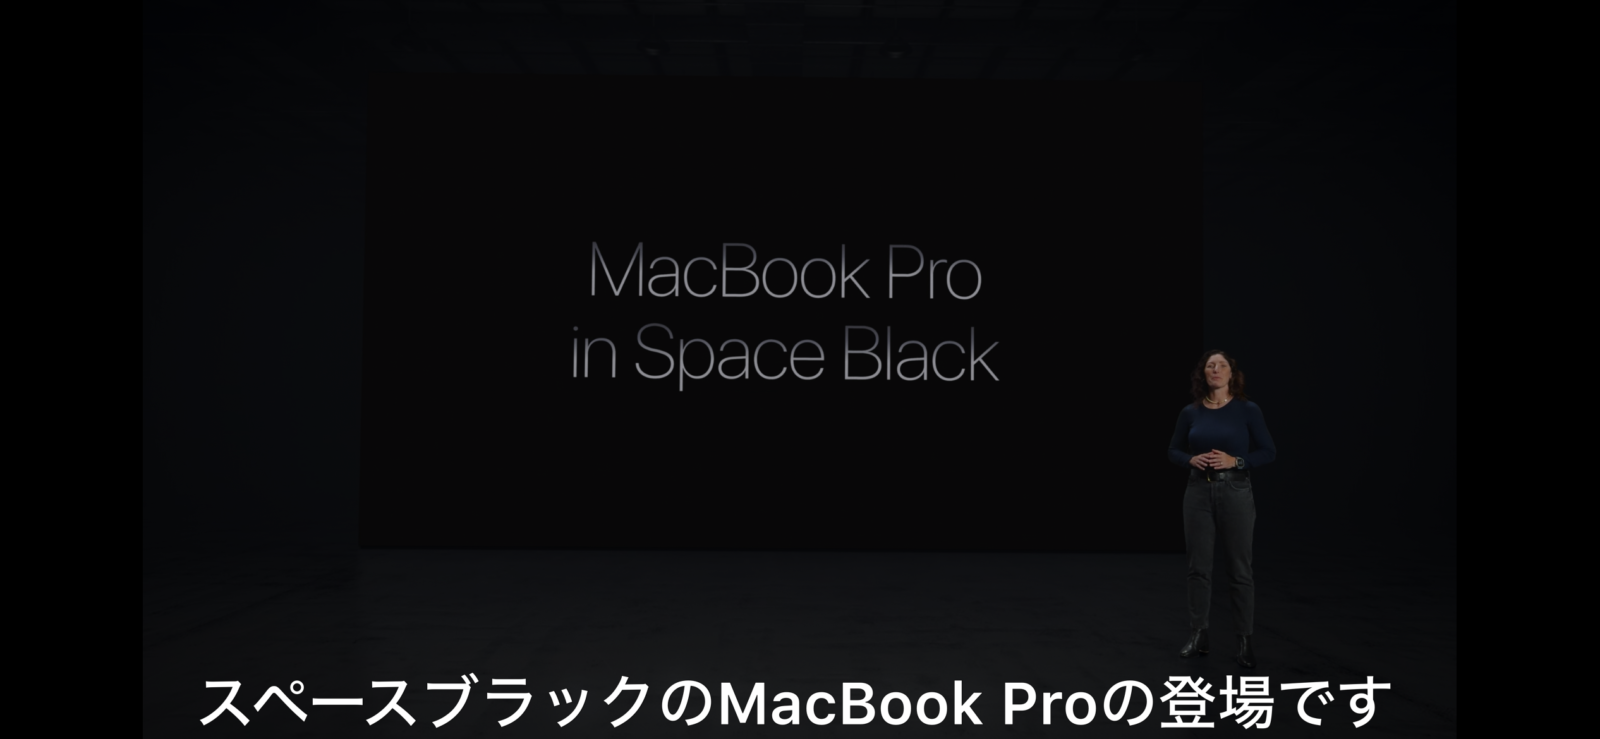 生活保護ですがM3 Macbook Pro買います